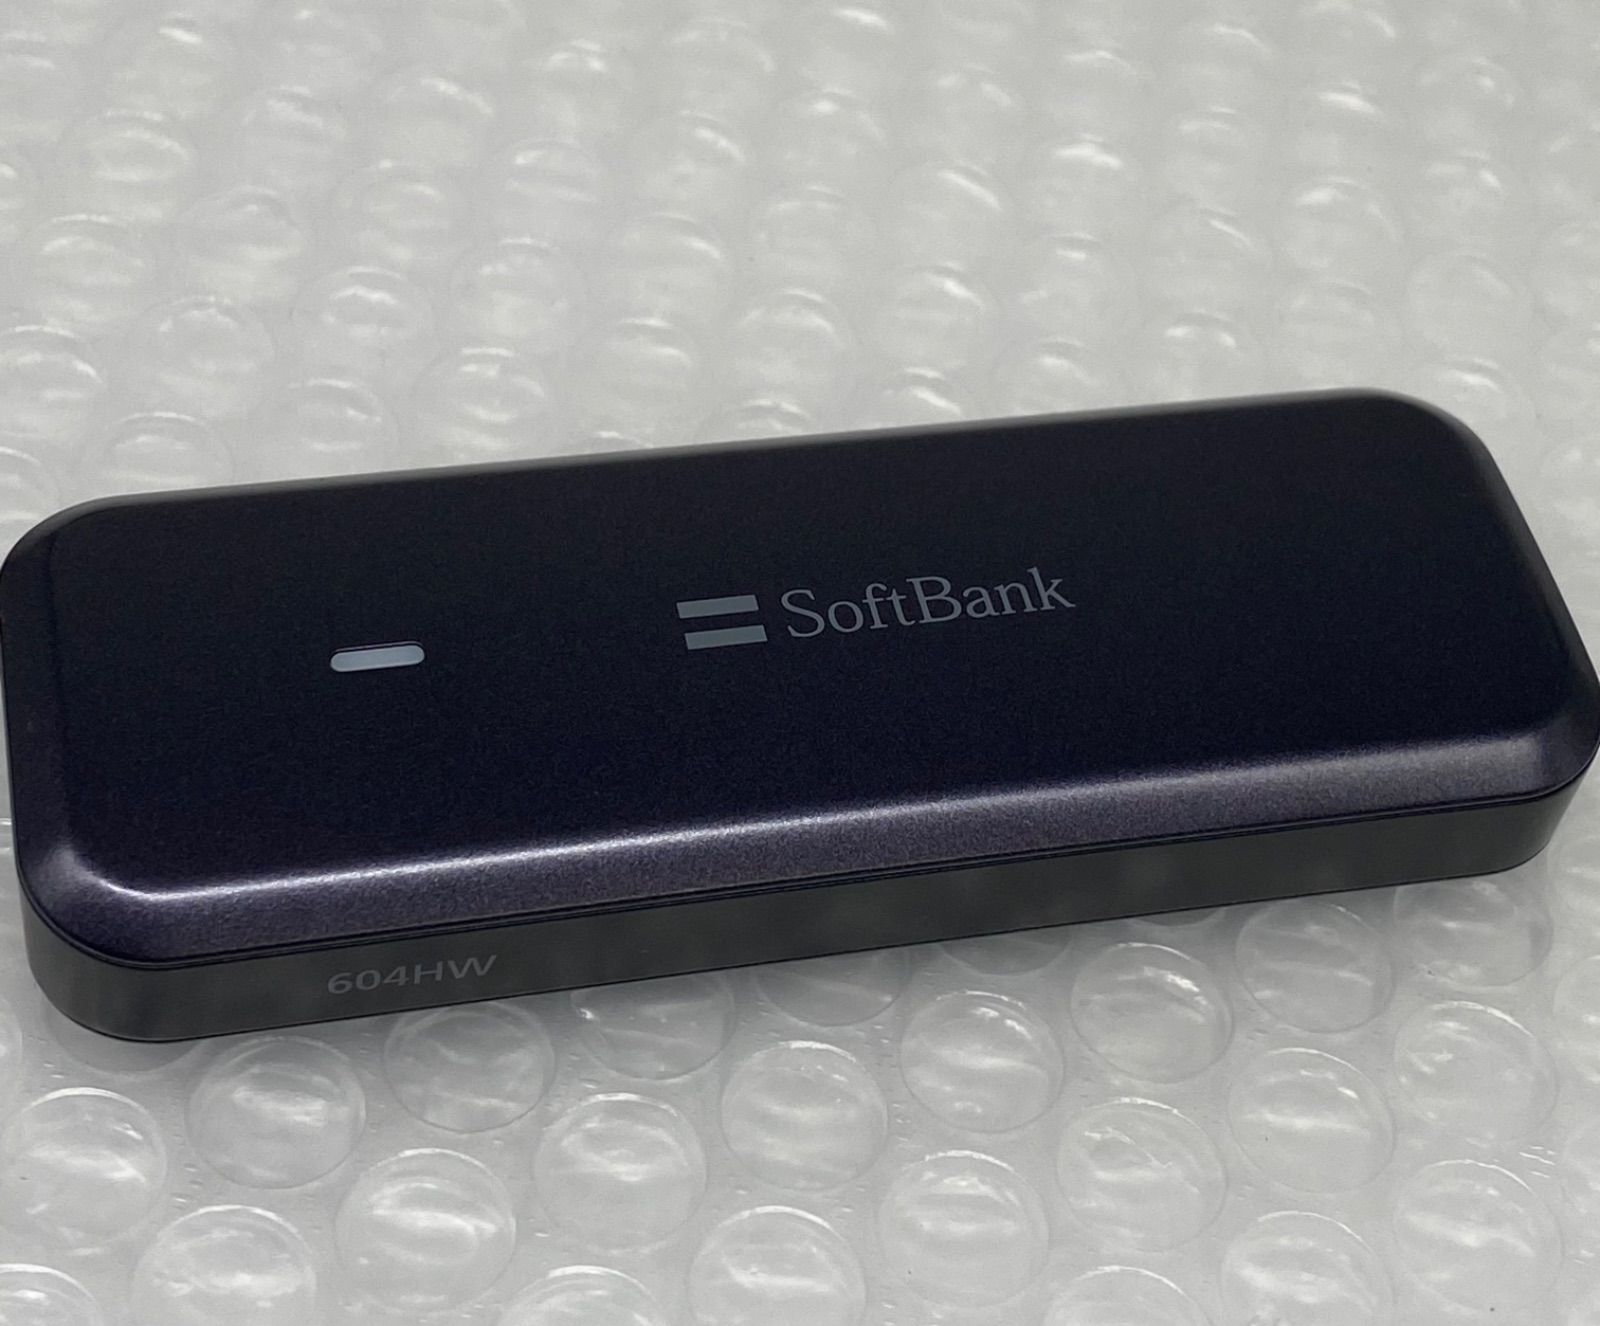 ソフトバンクのモバイルデータ通信端末 SoftBank 604HW 中古